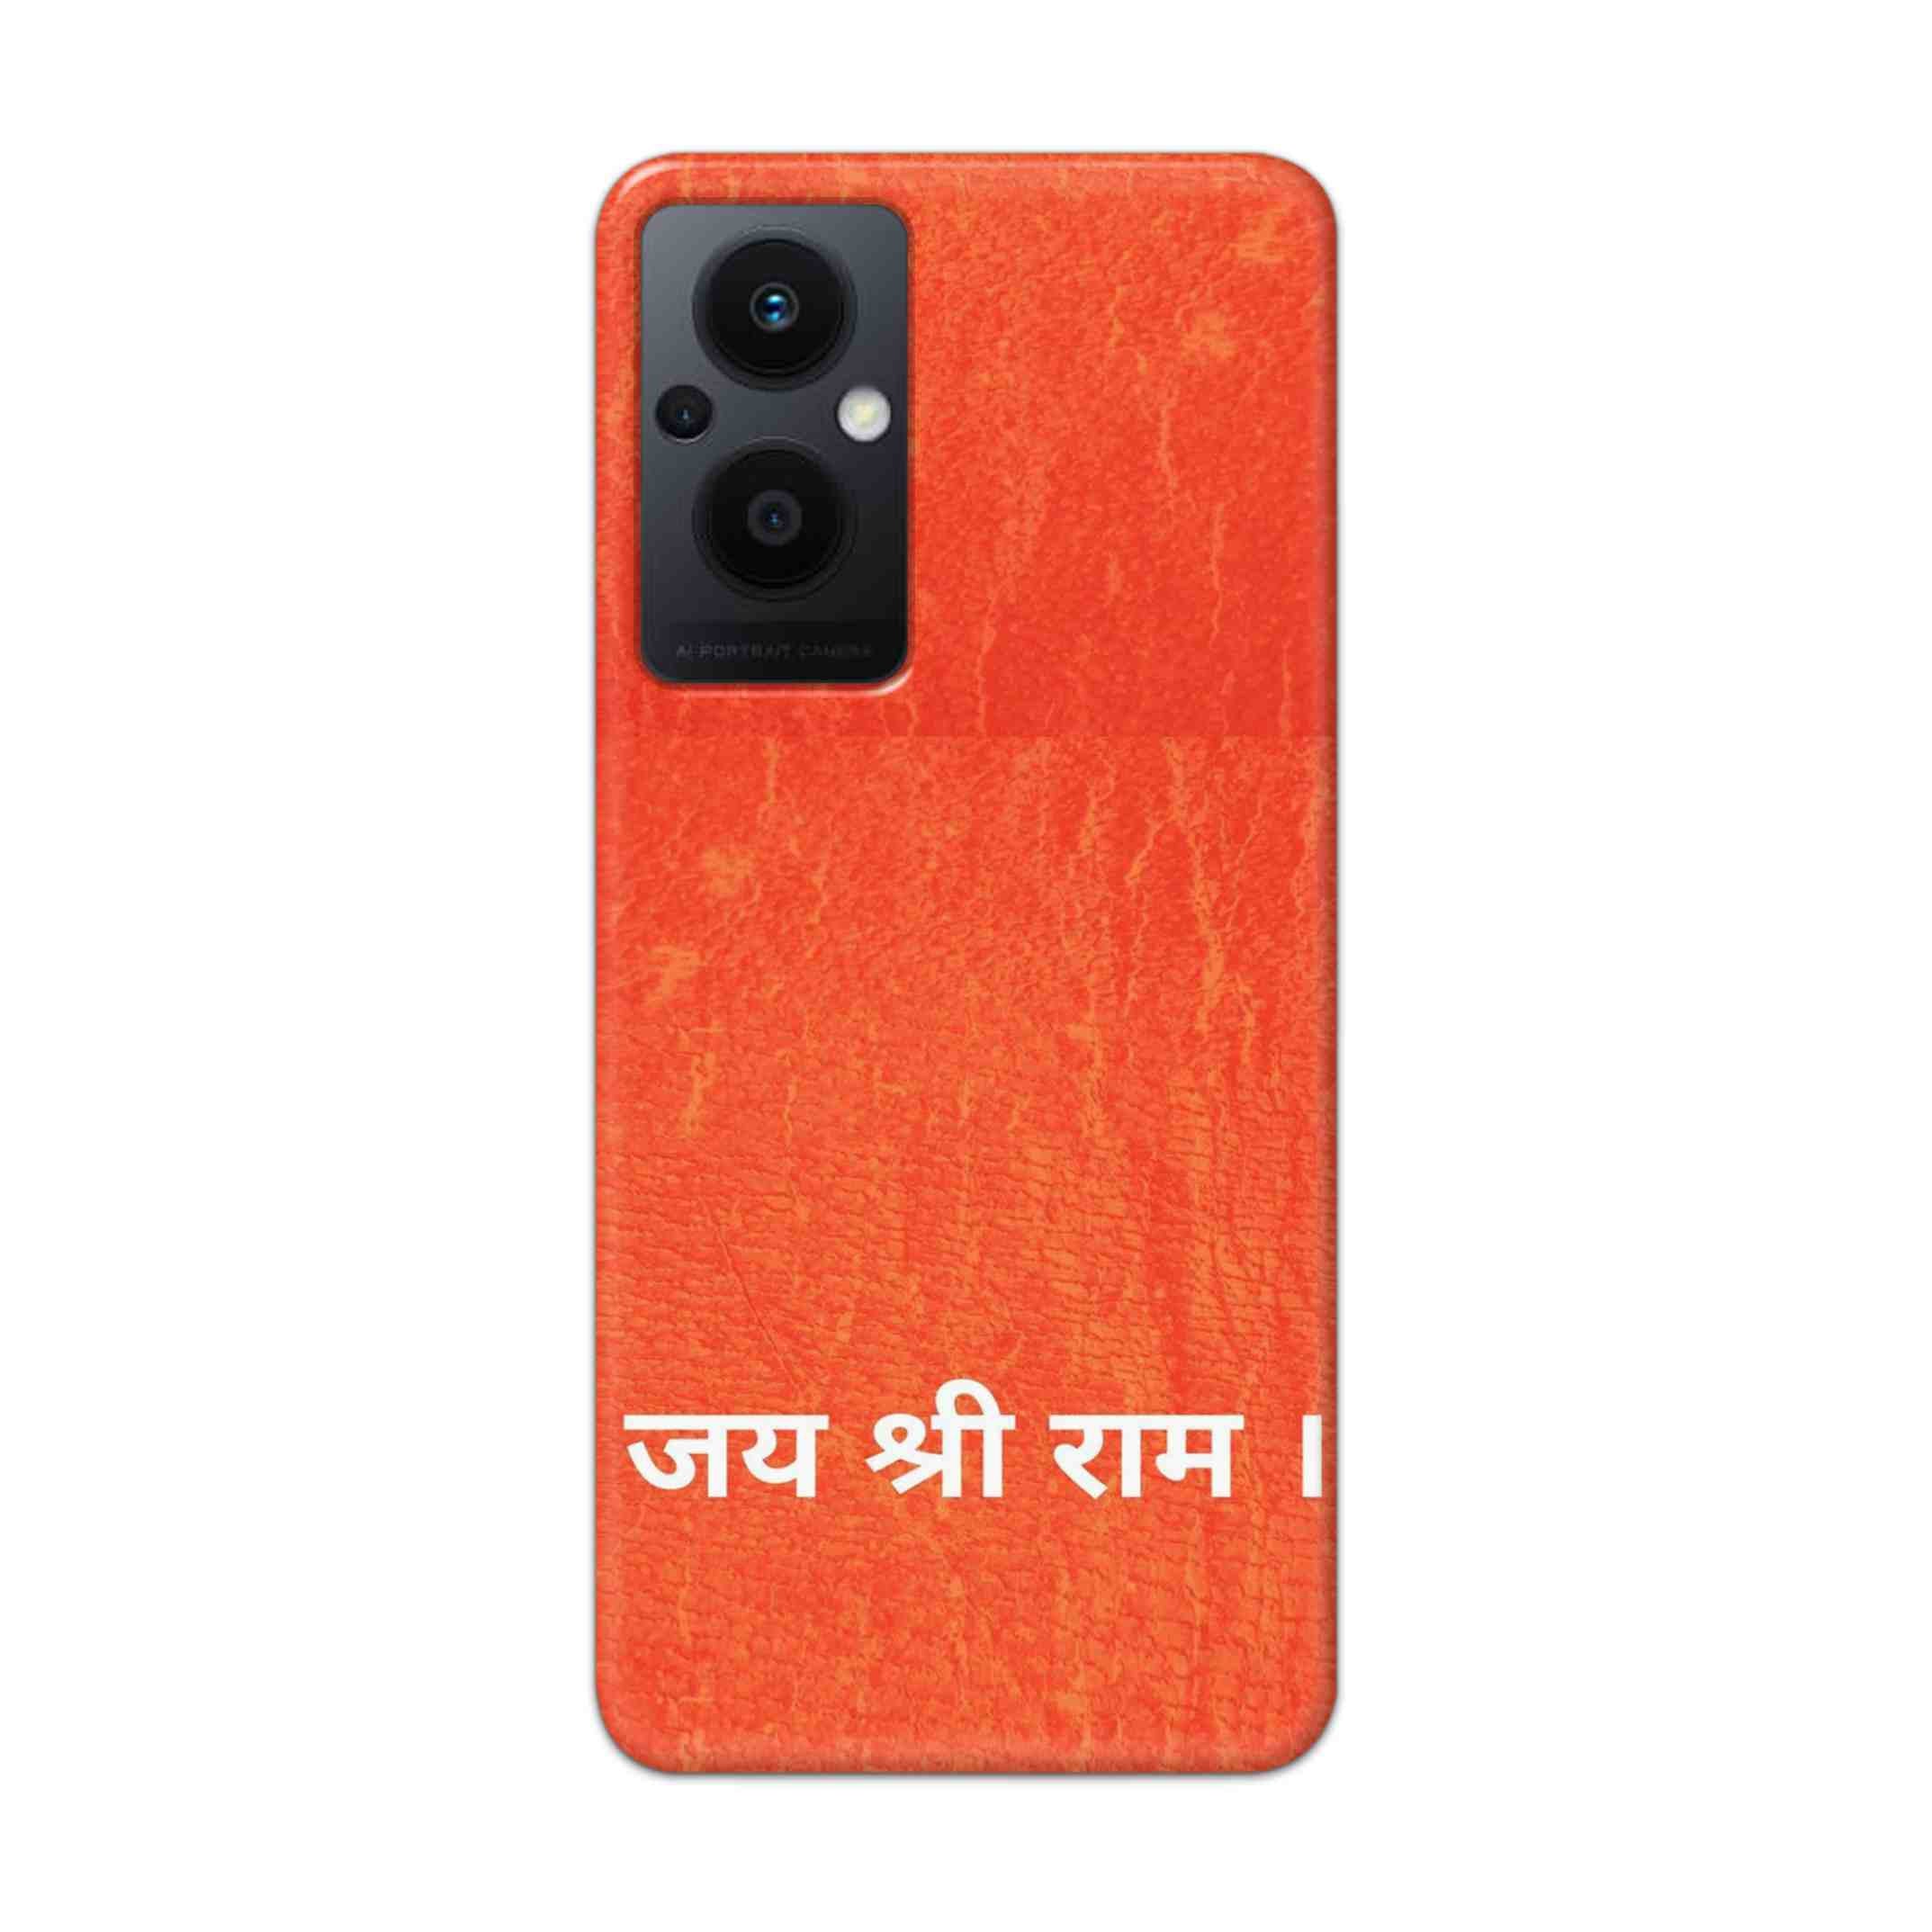 Buy Jai Shree Ram Hard Back Mobile Phone Case Cover For Oppo F21 pro 5G Online